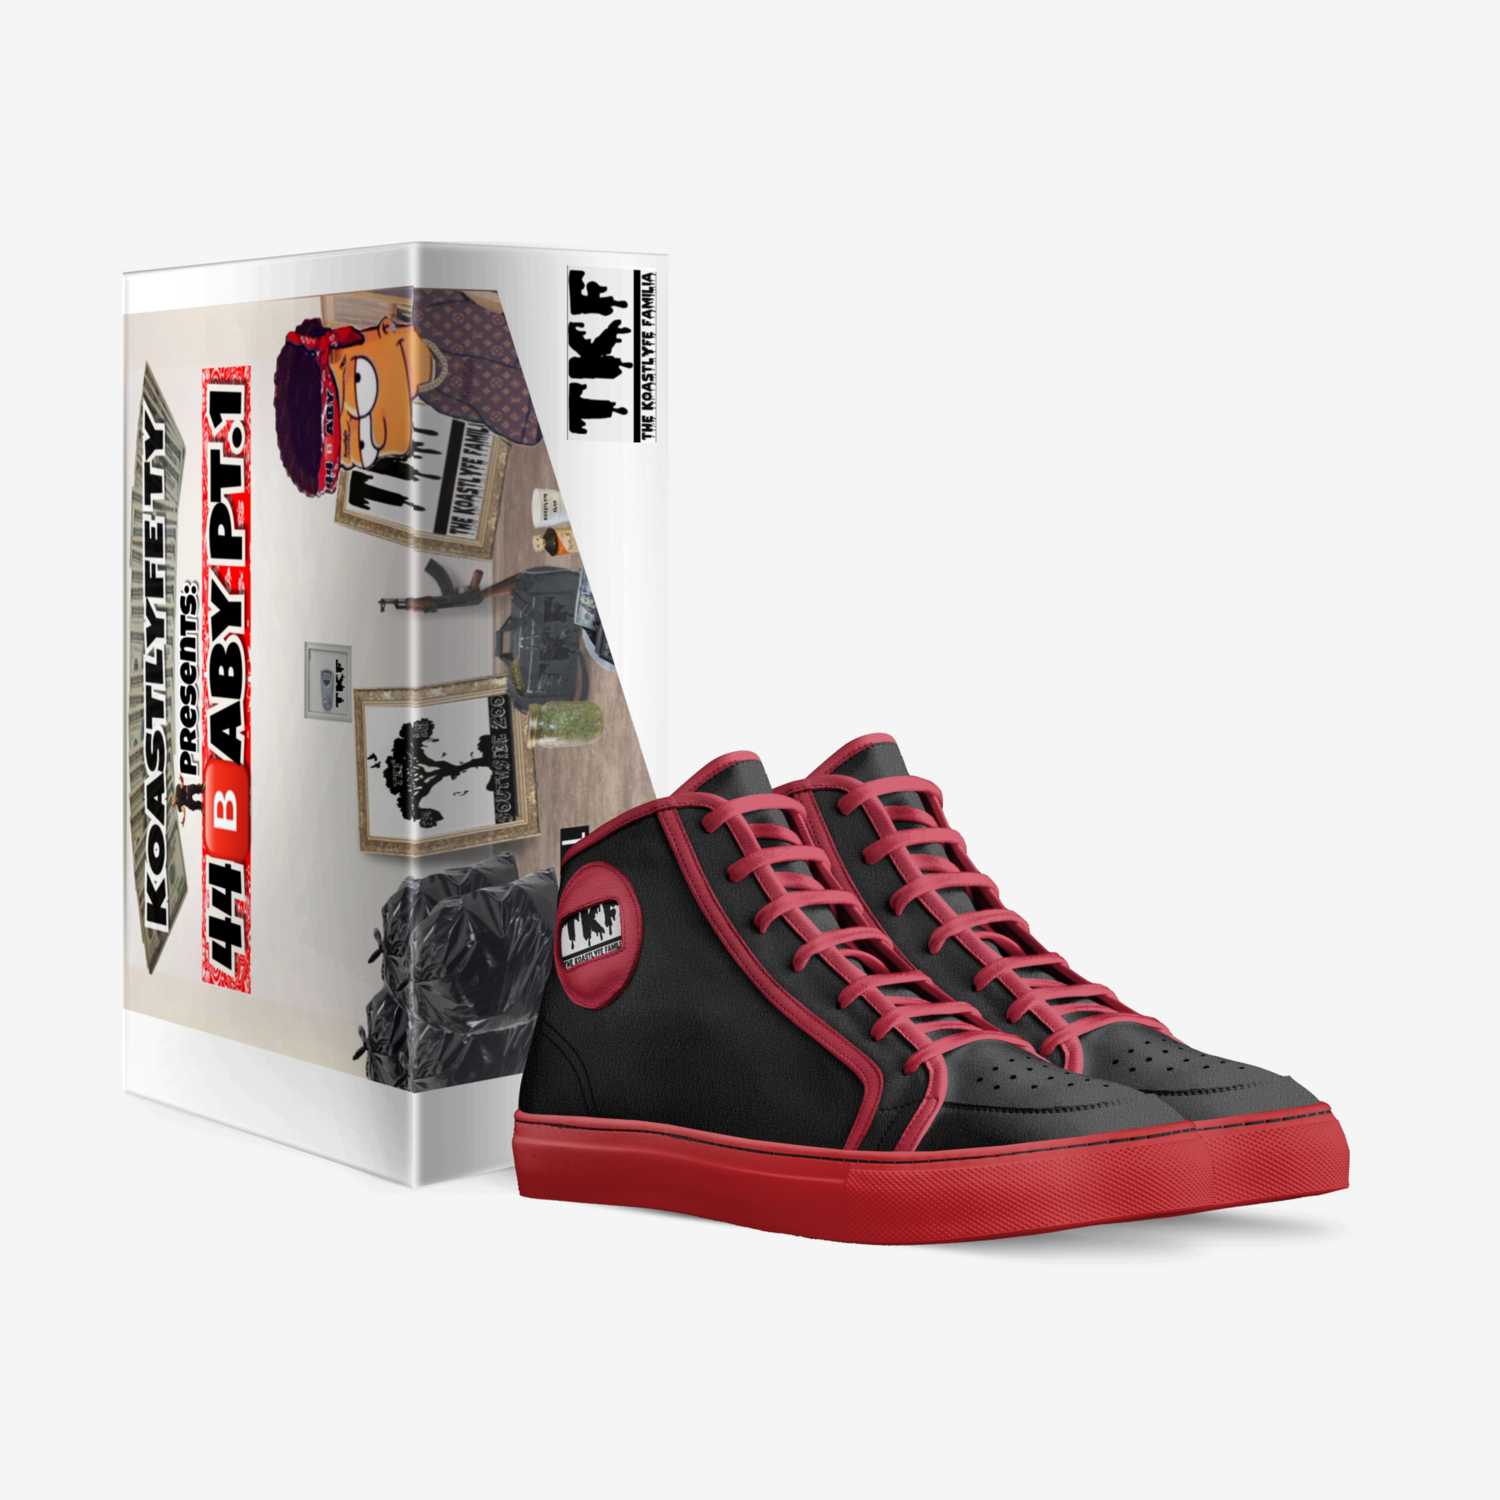  Koastlyfe Familia custom made in Italy shoes by Koastlyfe Ty | Box view